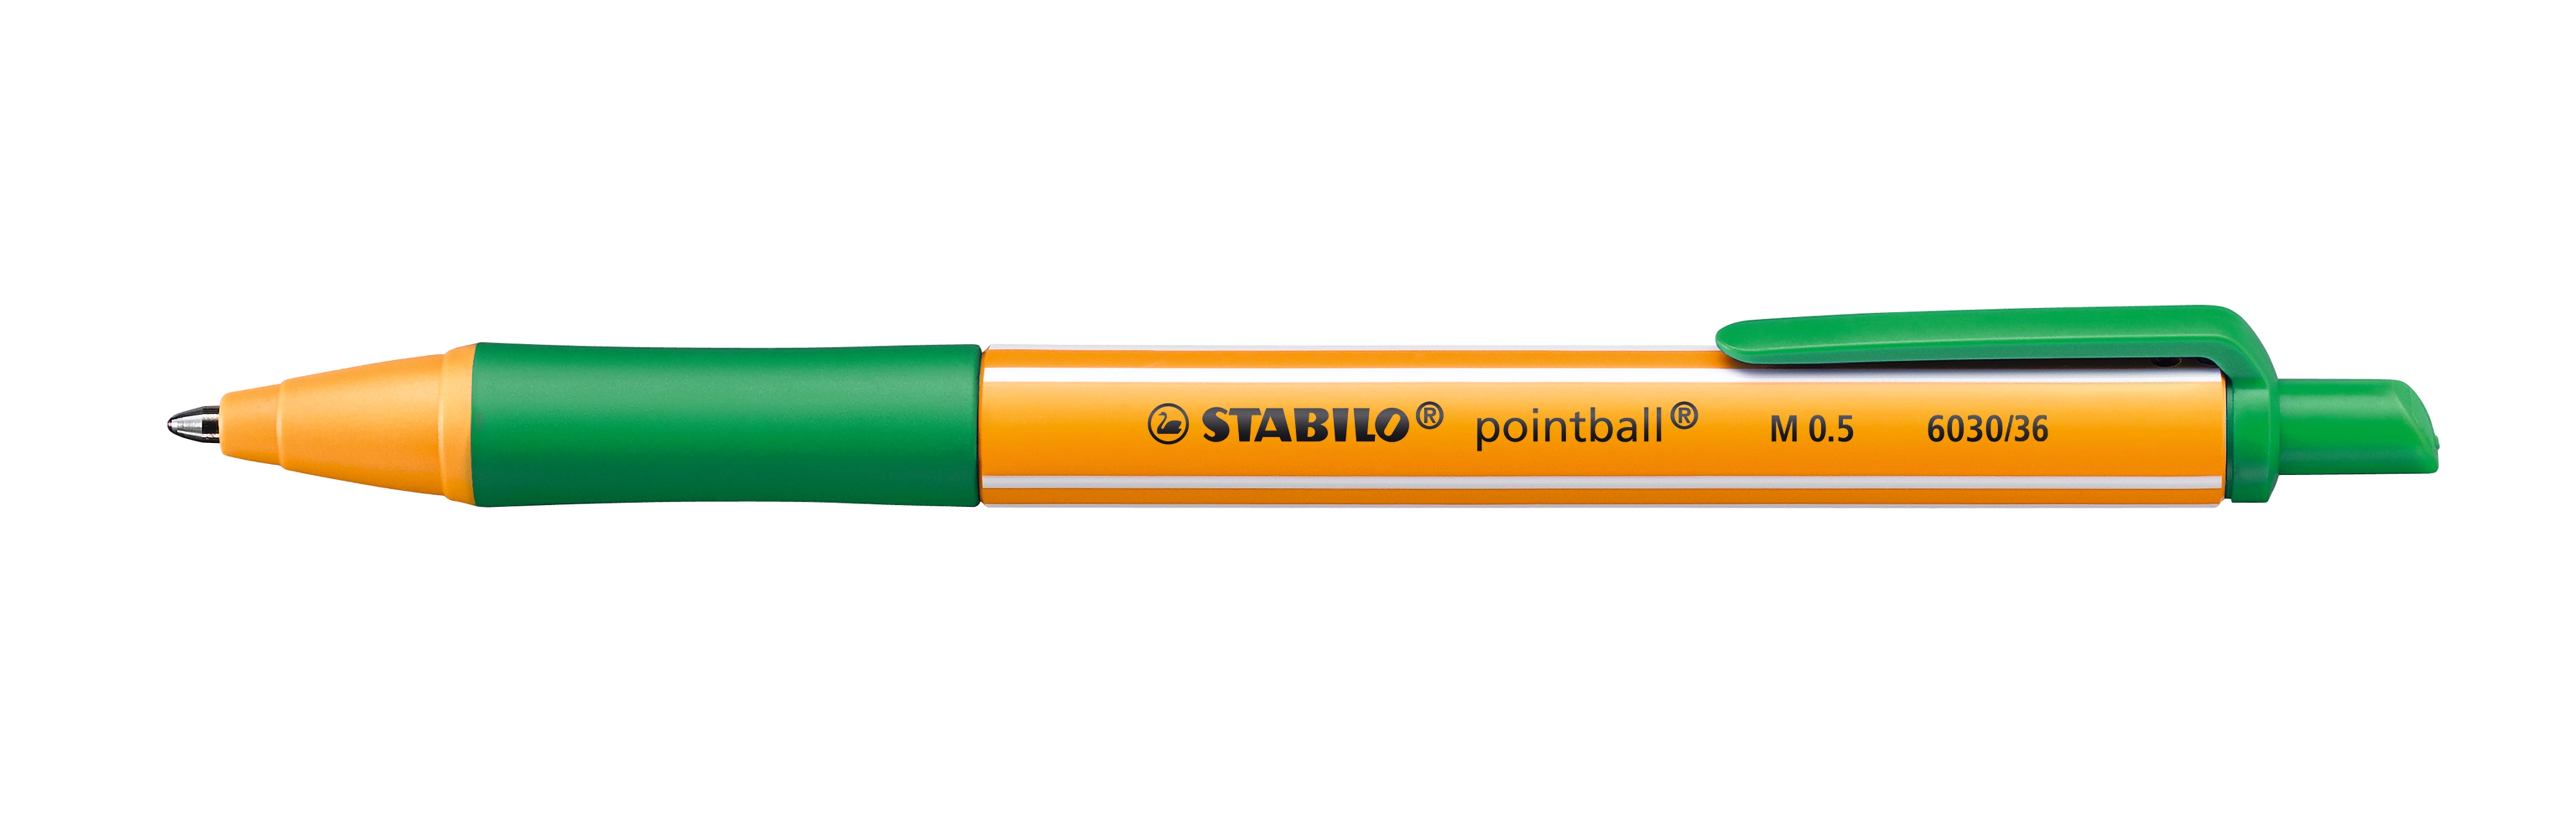 STABILO pointball Pen, Green